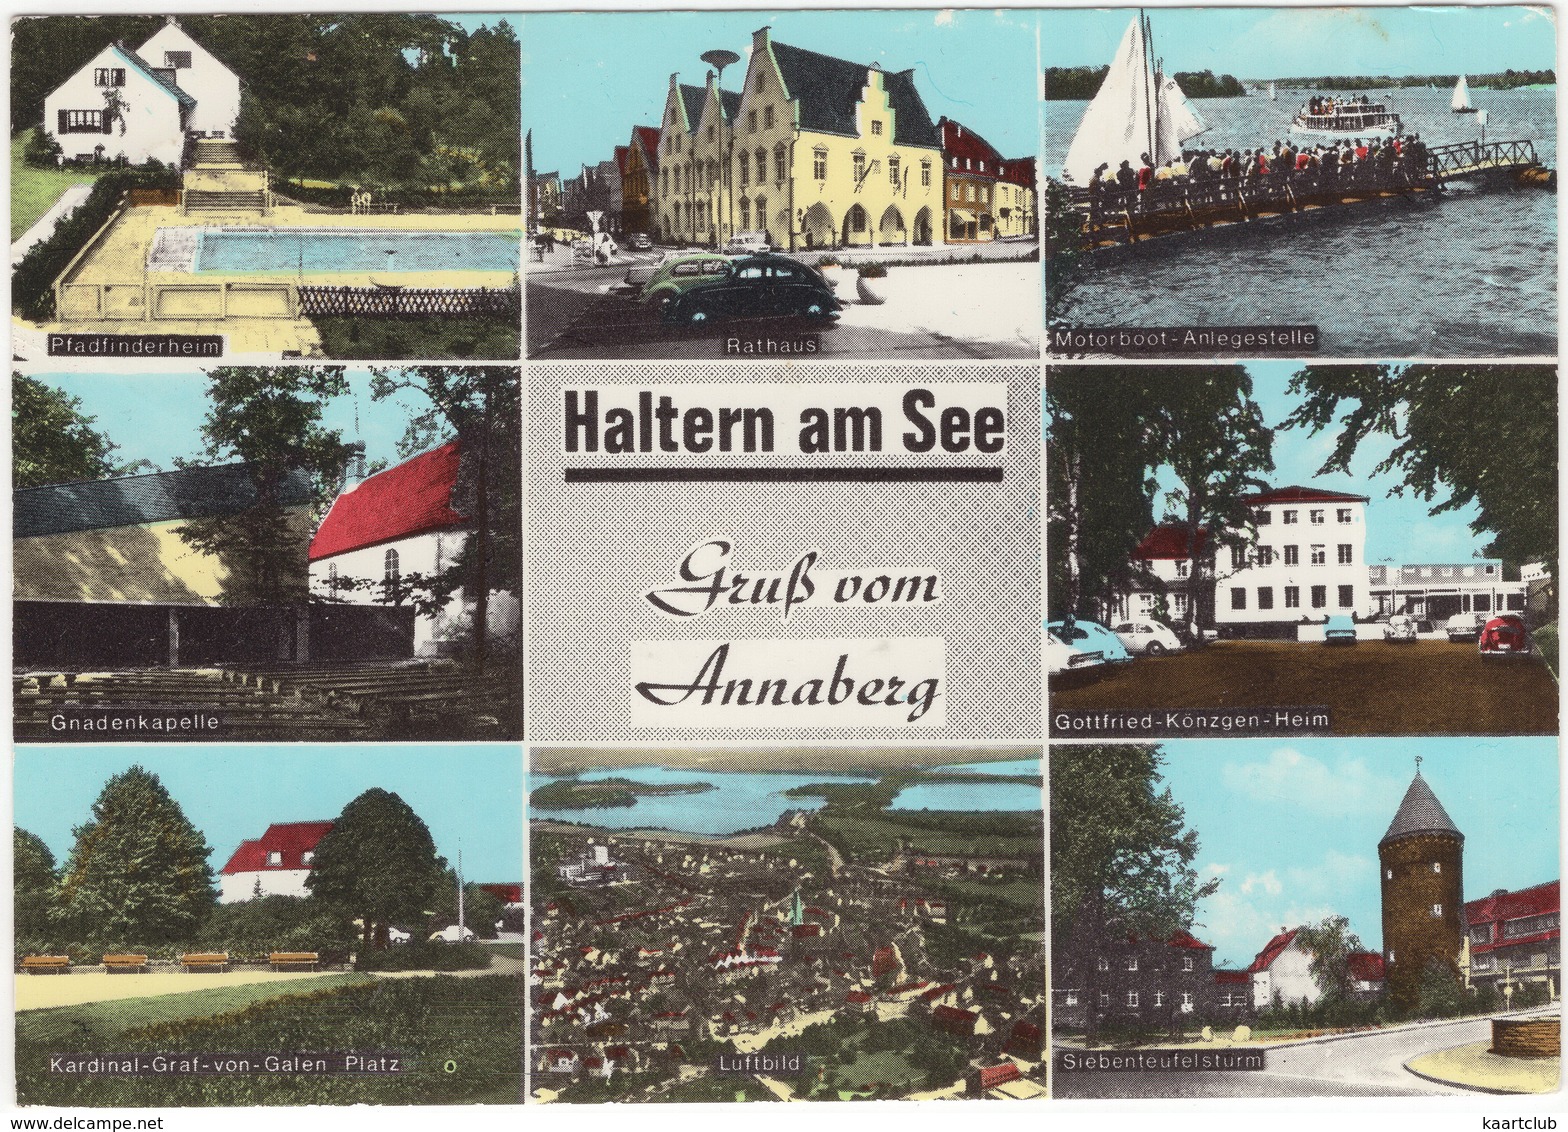 Haltern Am See: Pfadfinderheim, Schwimmbad, Motorboot-Anlegestelle,G.Könzgen-Heim,Rathaus,Siebenteufelsturm,Gnadenkapele - Munster